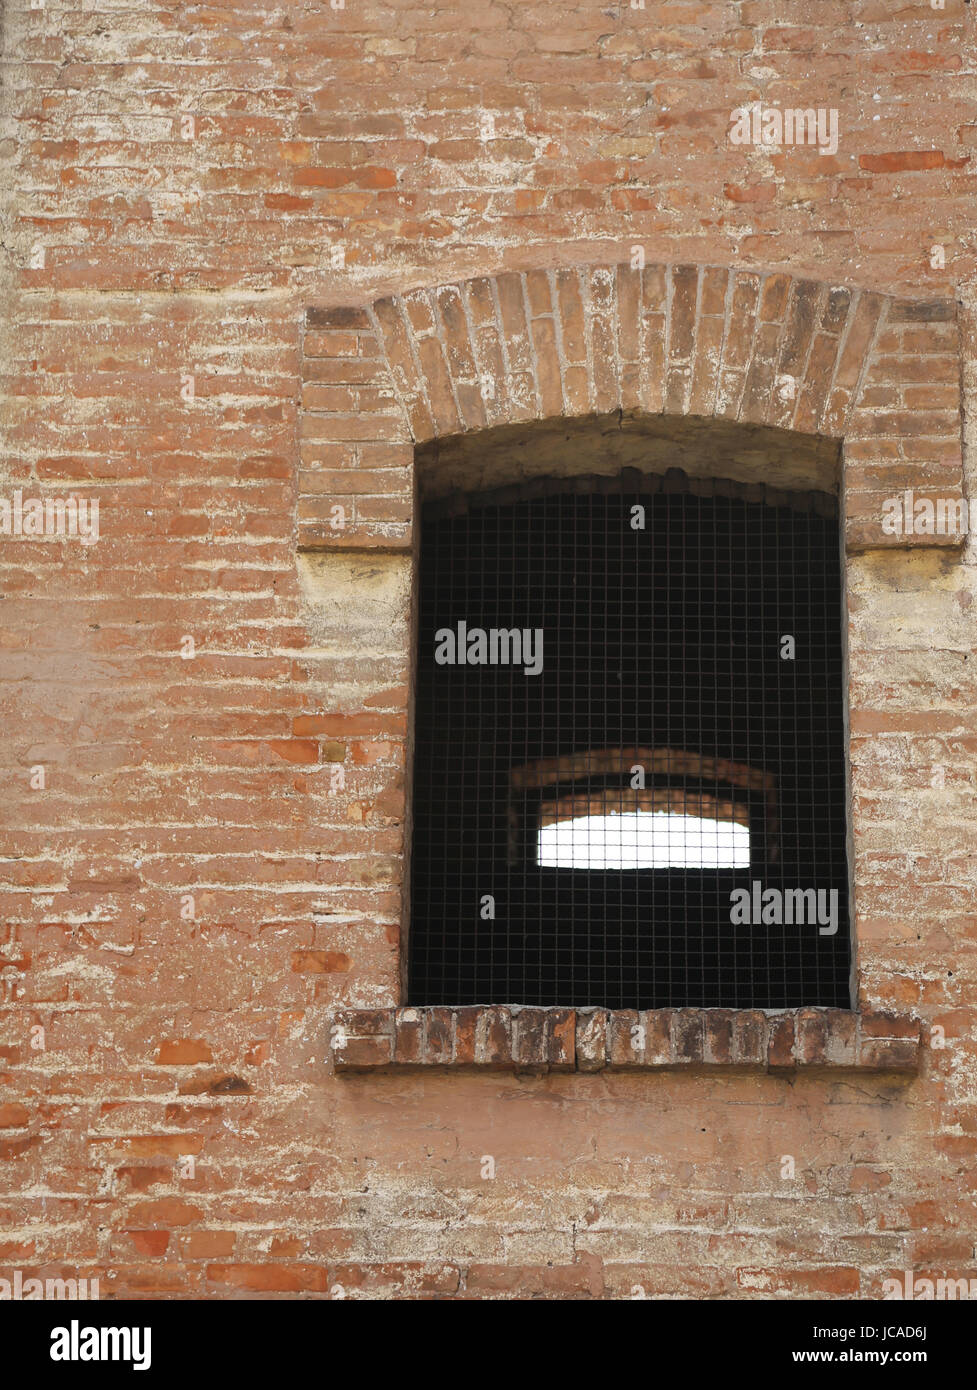 Fenster von einem alten Backsteinbau mit eisernen Gittern Stockfoto